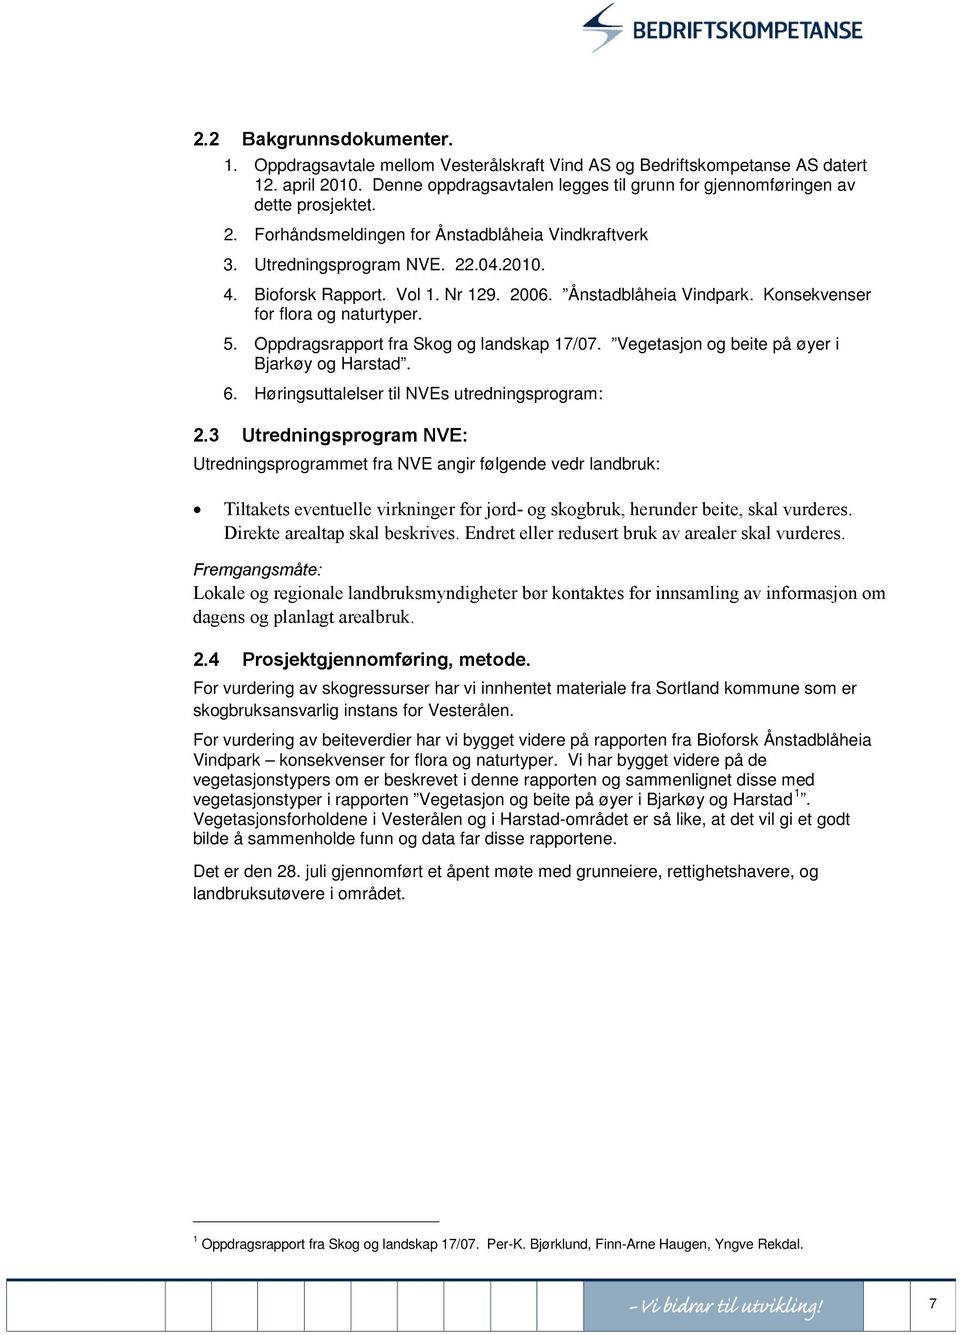 Oppdragsrapport fra Skog og landskap 17/07. Vegetasjon og beite på øyer i Bjarkøy og Harstad. 6. Høringsuttalelser til NVEs utredningsprogram: 2.